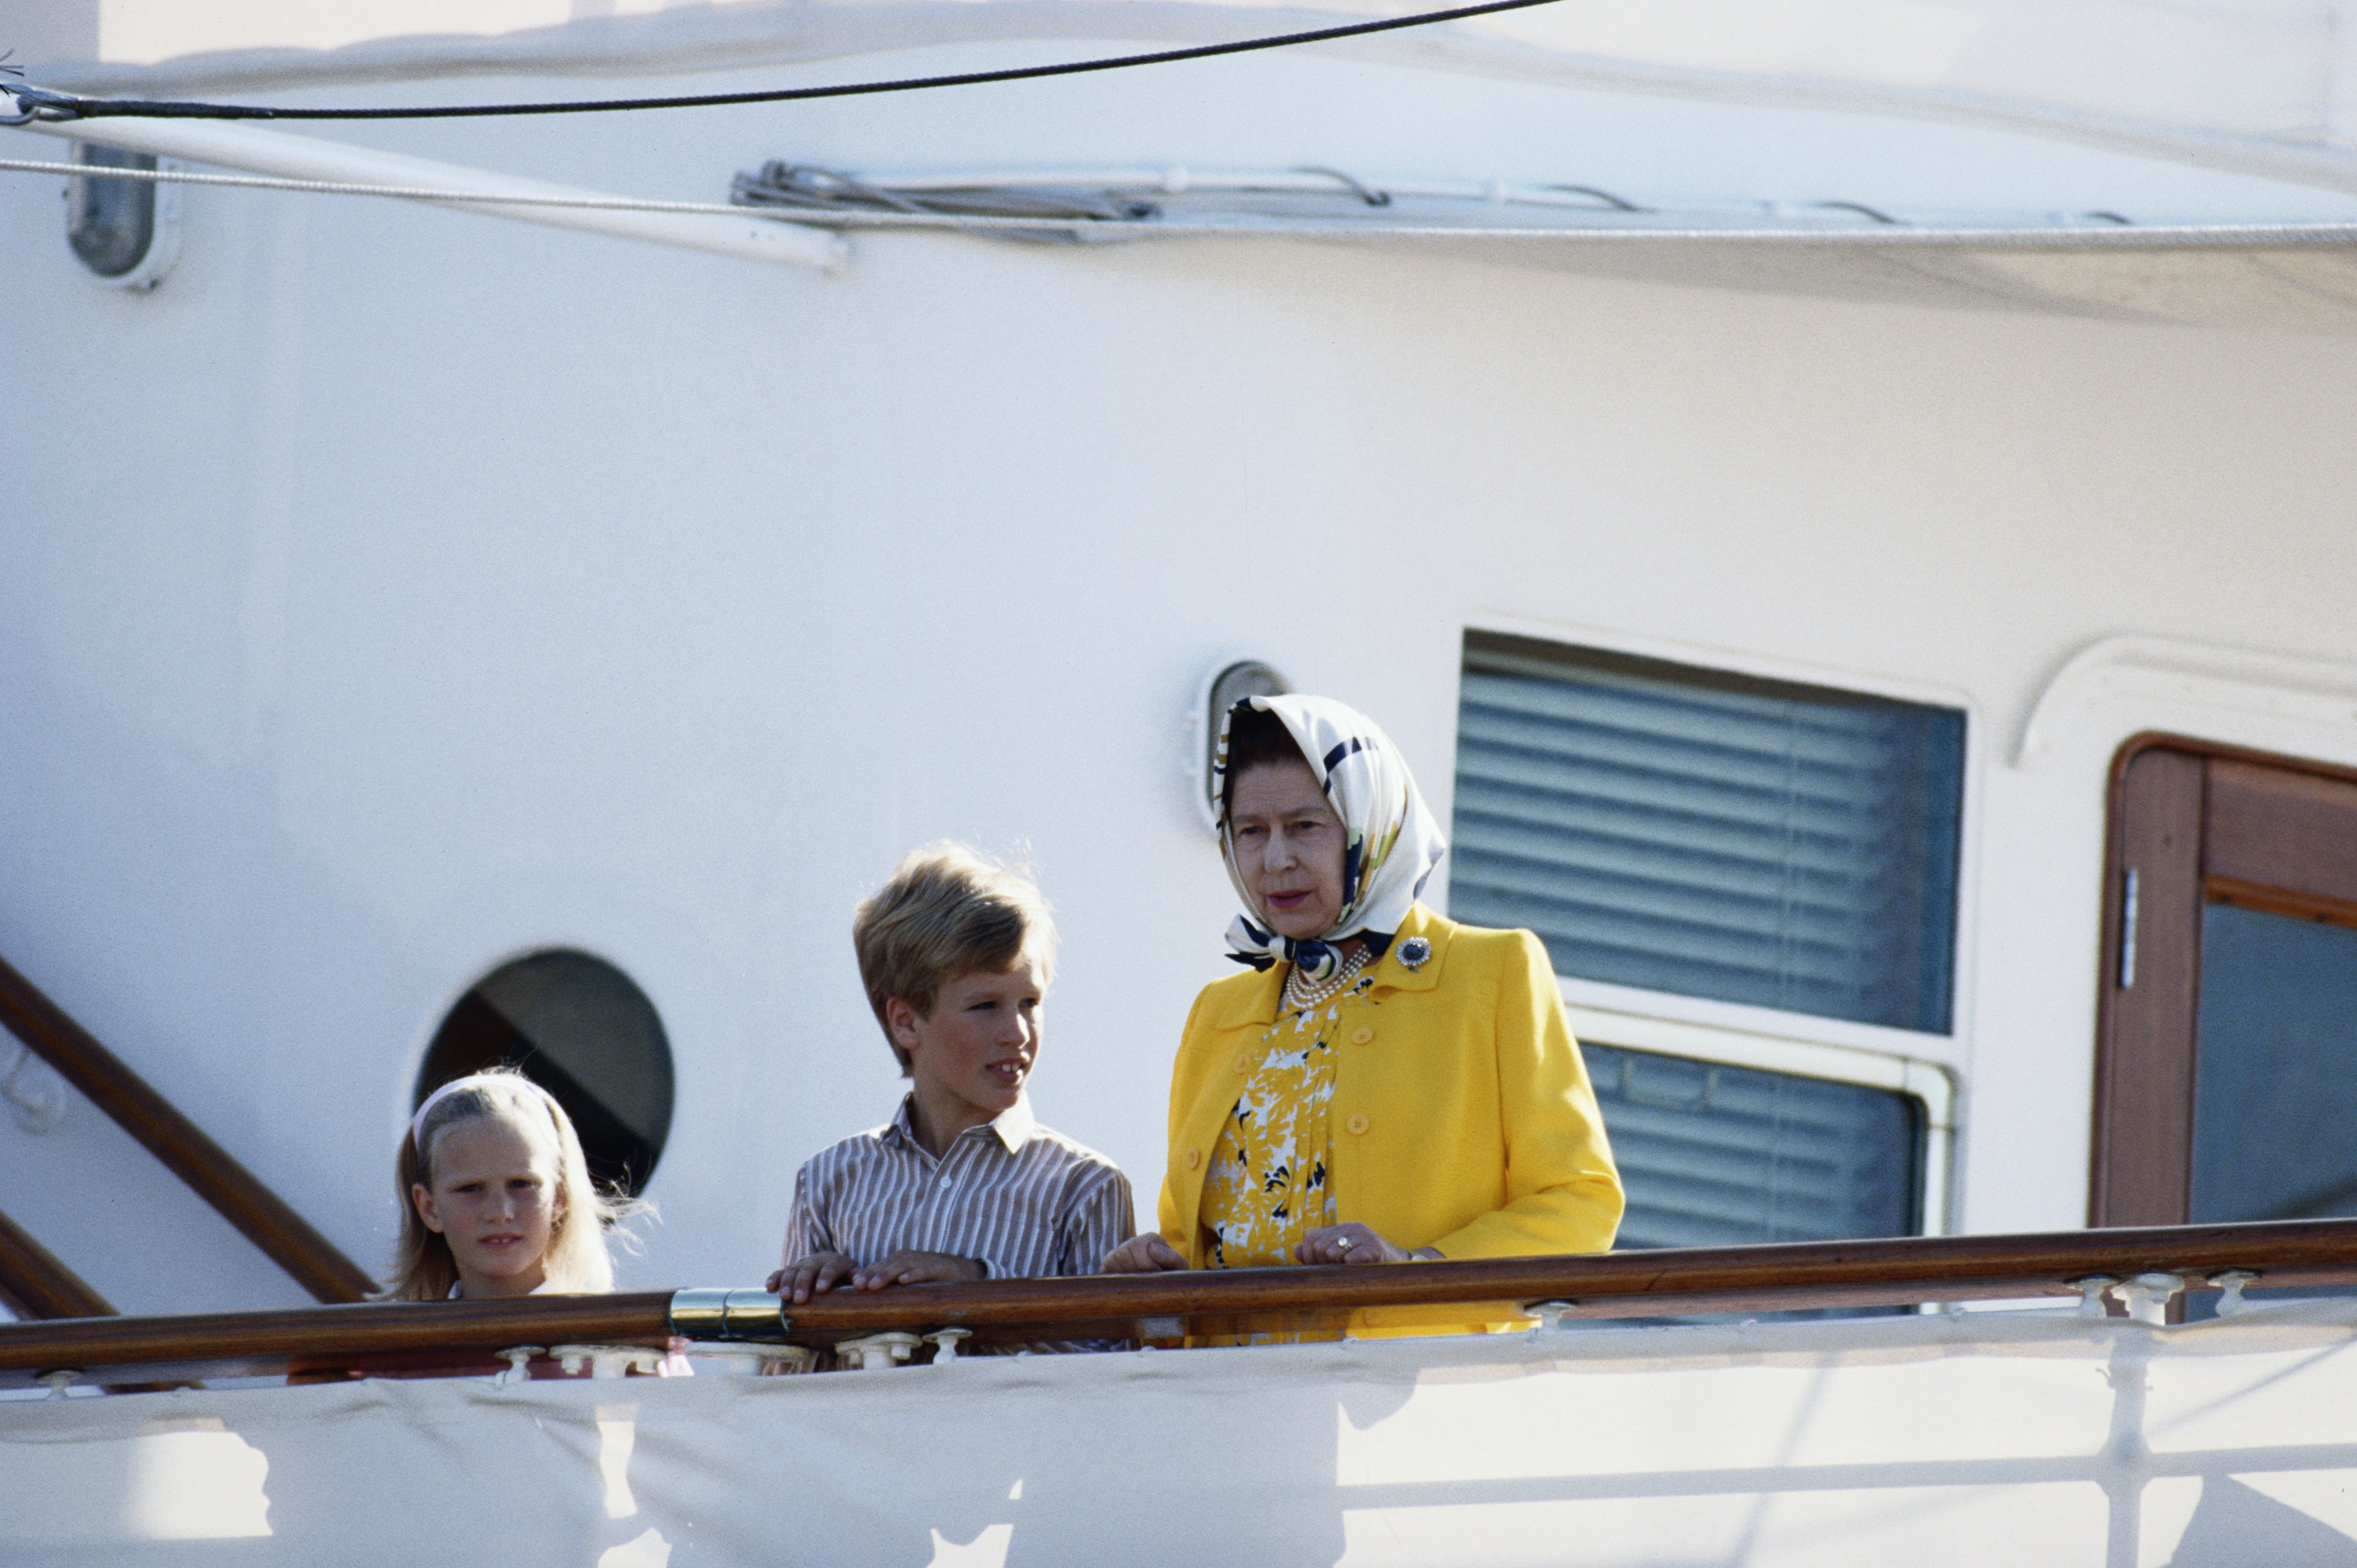 Zara Phillips mit ihrem Bruder Peter Philips und ihrer Großmutter Königin Elizabeth II. an Bord der königlichen Yacht "Britannia" zu Beginn einer Kreuzfahrt zu den westlichen Inseln, Großbritannien, 5. August 1988 | Quelle: Getty Images